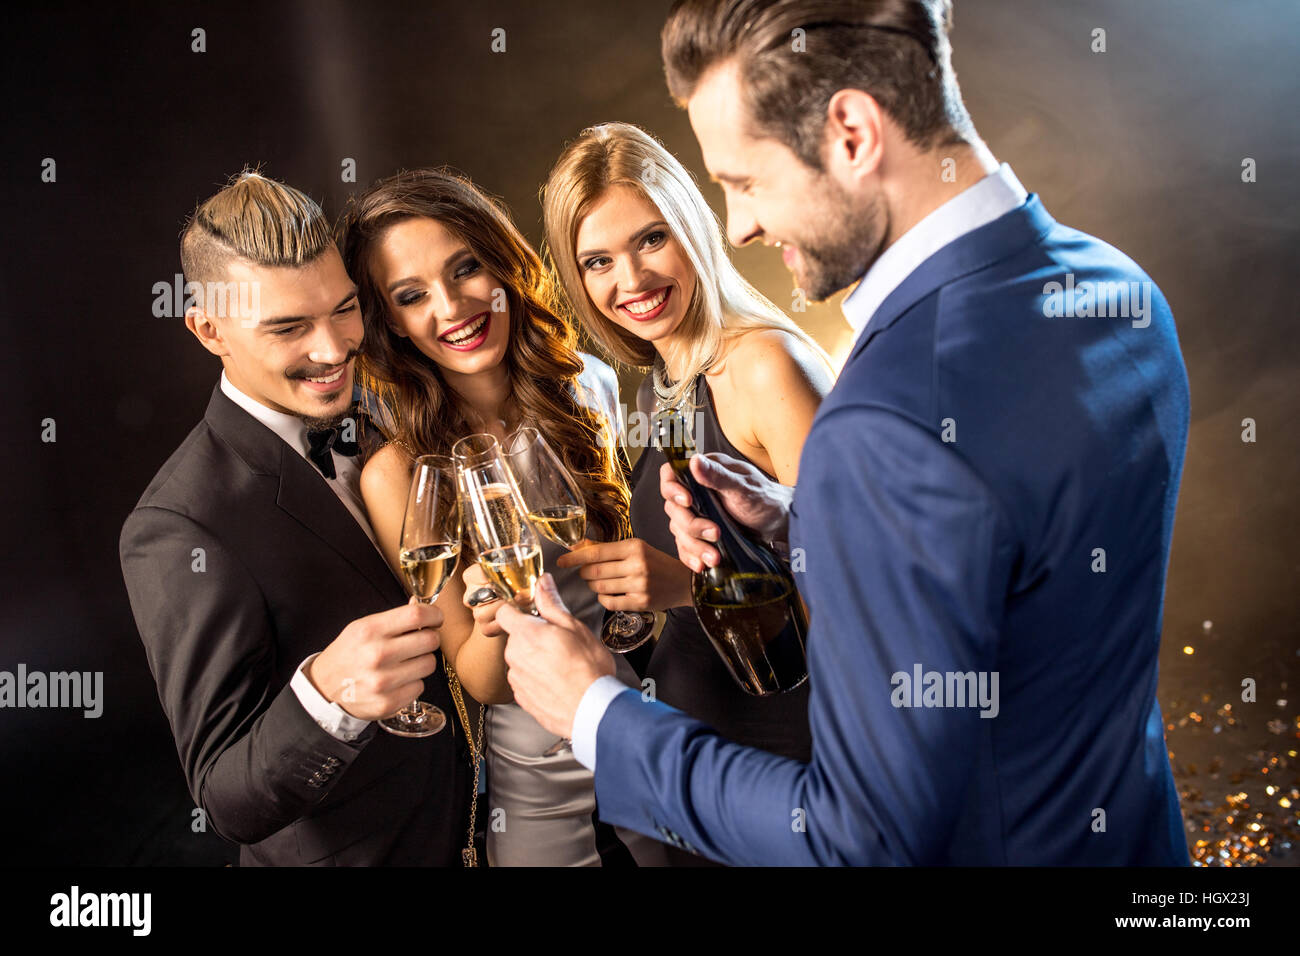 Felice giovani amici bevendo champagne e bicchieri tintinnanti Foto Stock